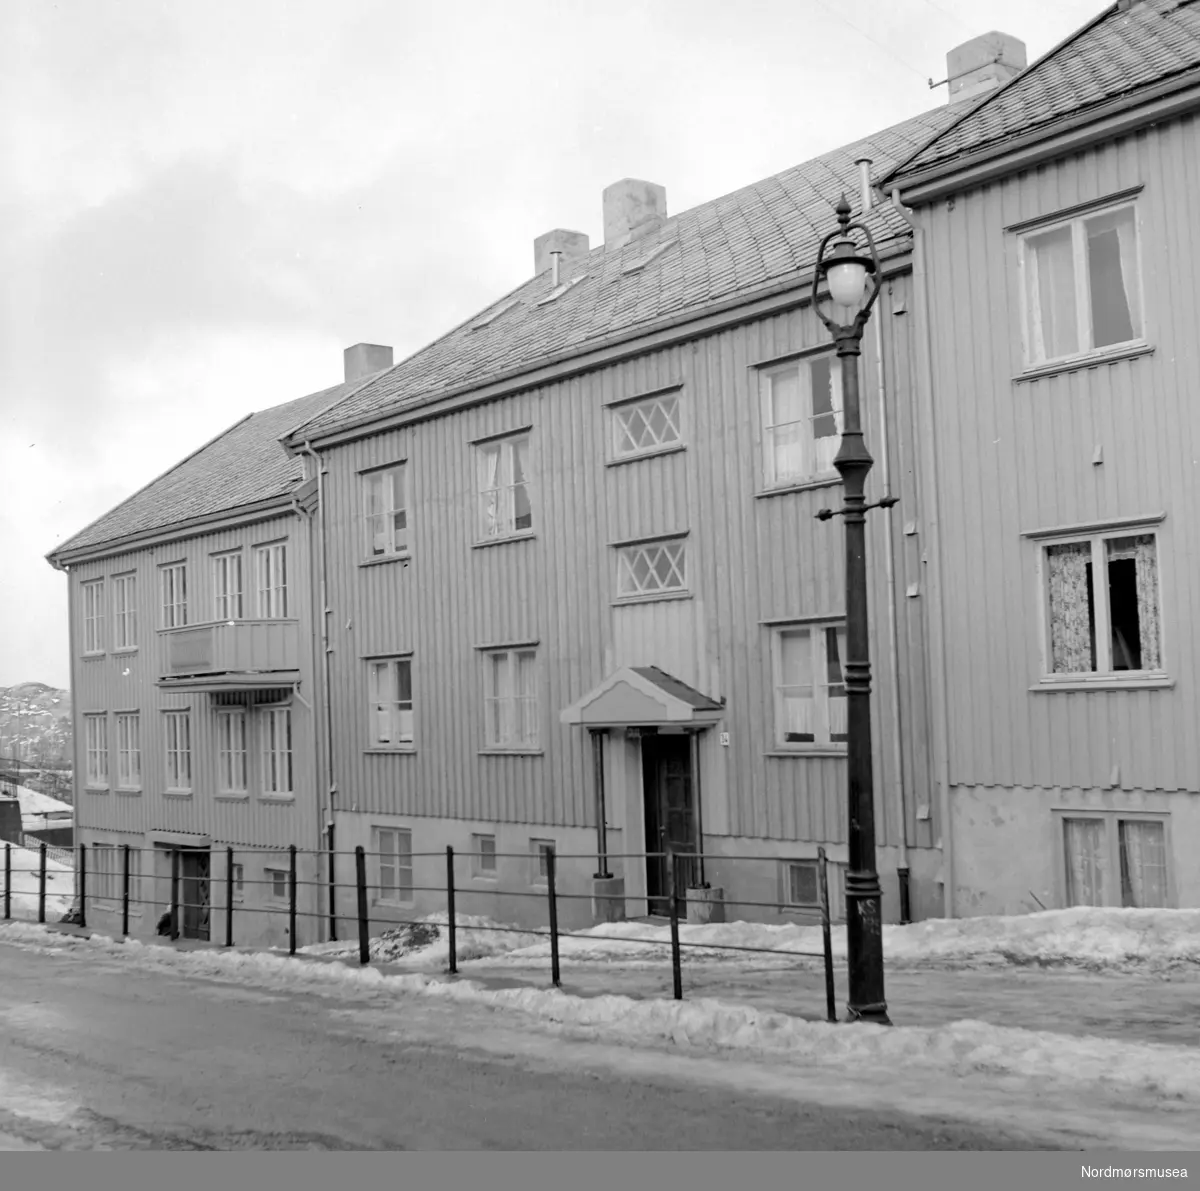 Foto av en bygård, mest trolig i Kristiansund. Datering er trolig mellom 1955-1965. Fotograf er Nils Williams i Kristiansund. Fra Nordmøre museums fotosamlinger.